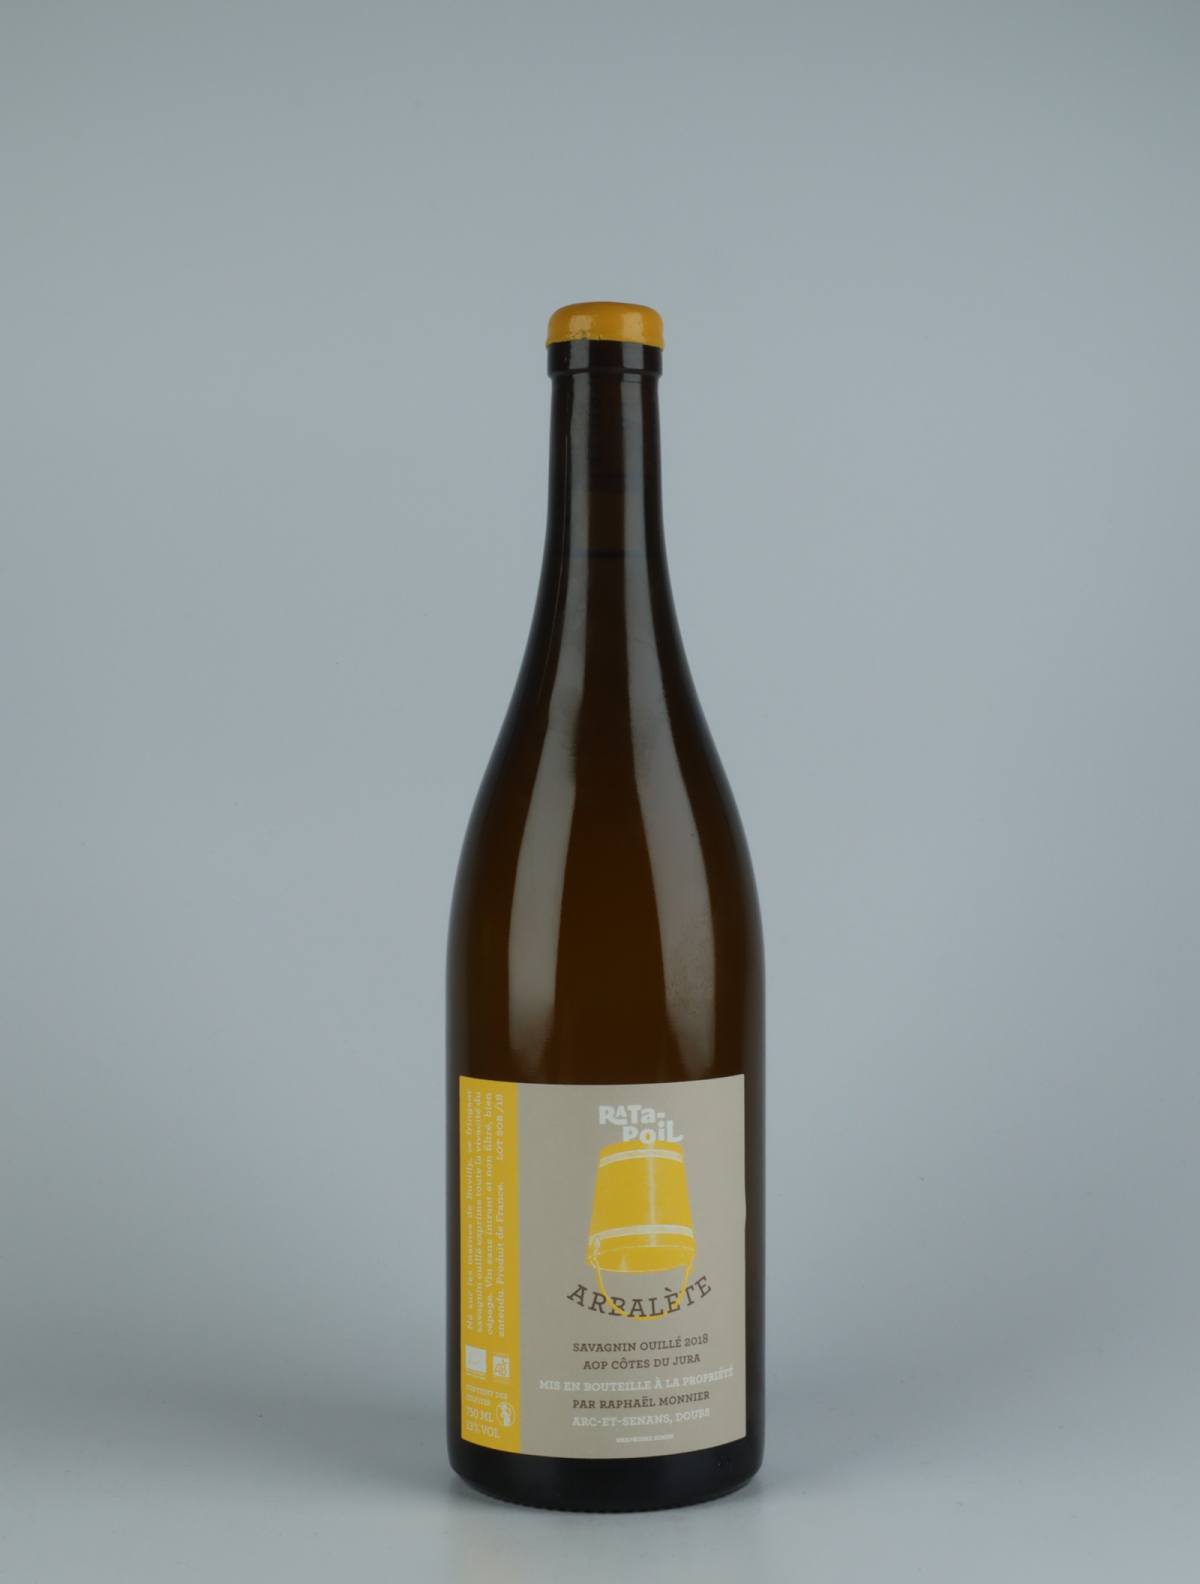 En flaske 2018 Arbalète Hvidvin fra Domaine Ratapoil, Jura i Frankrig